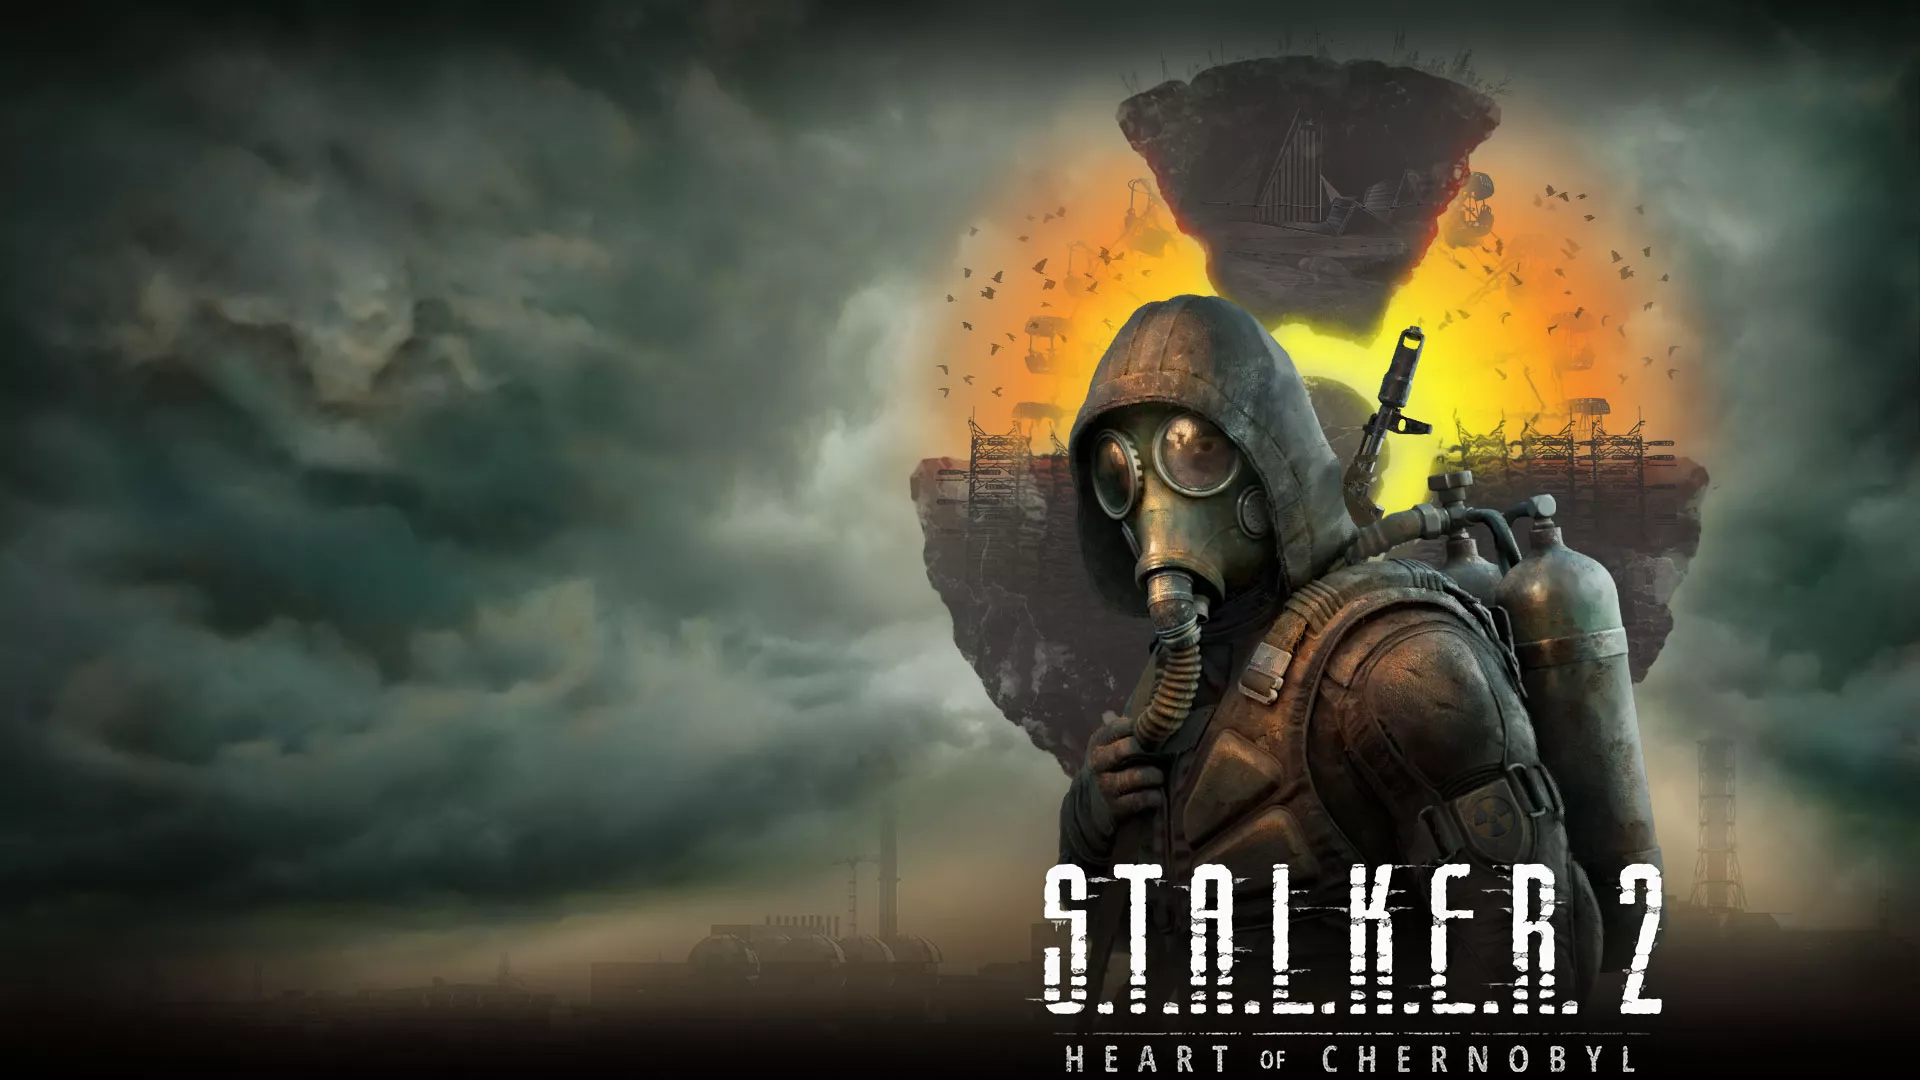 S.T.A.L.K.E.R. 2: Heart of Chornobyl auf 2023 verschoben Heropic